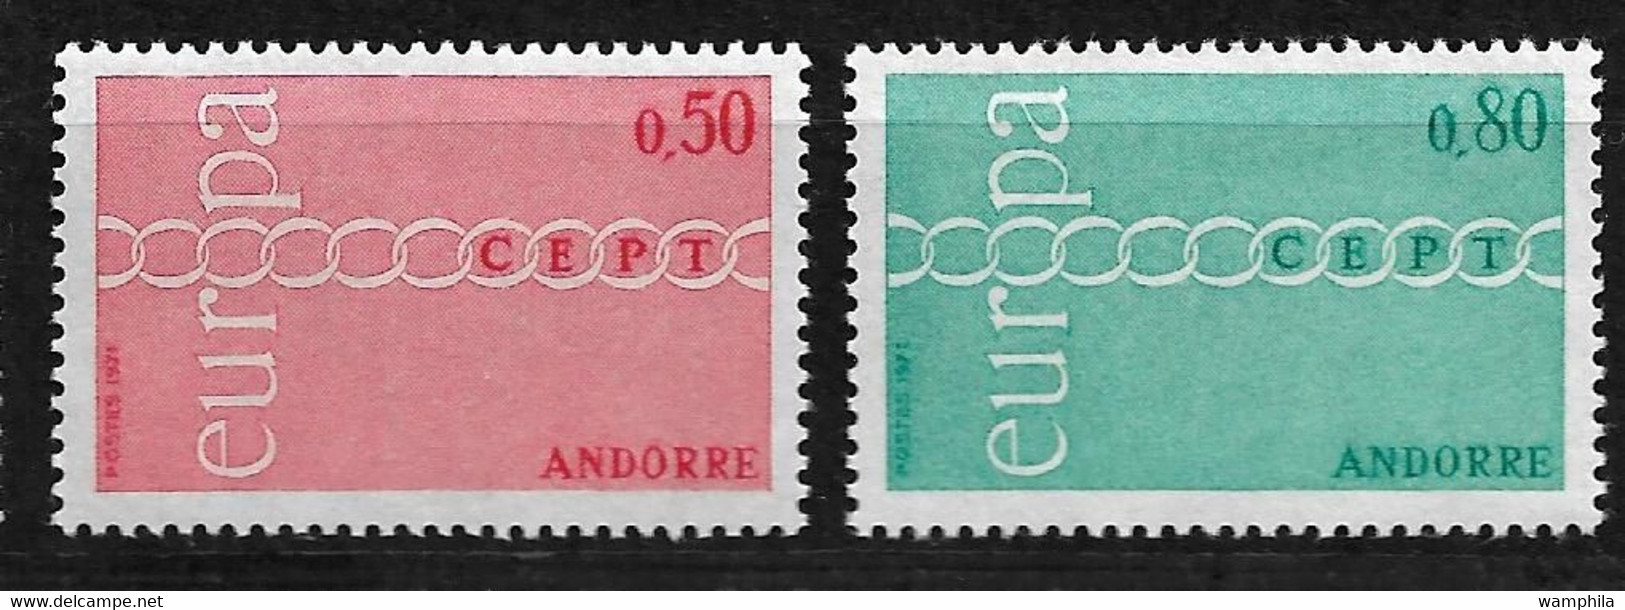 Andorre Europa N°179/80, 212/13, 226/27, 237/38, 243/44, 253/54, 329/30, 348/49,  358/59,**cote 253€. - Collezioni